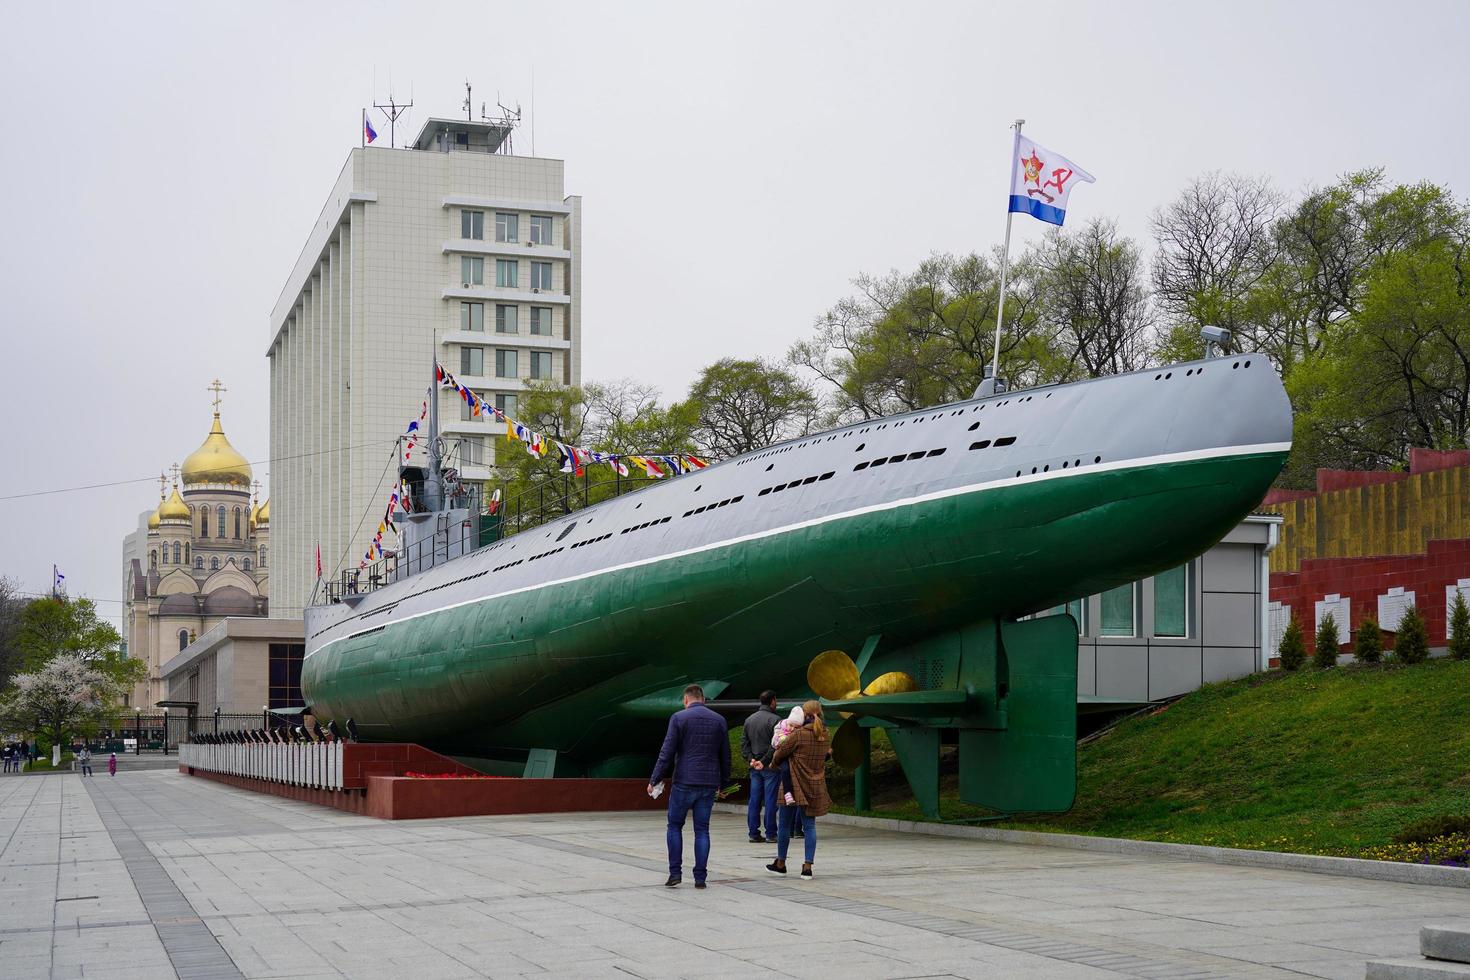 wladiwostok, russland-9. mai 2020 - u-boot-museumsschiff am wasser. foto